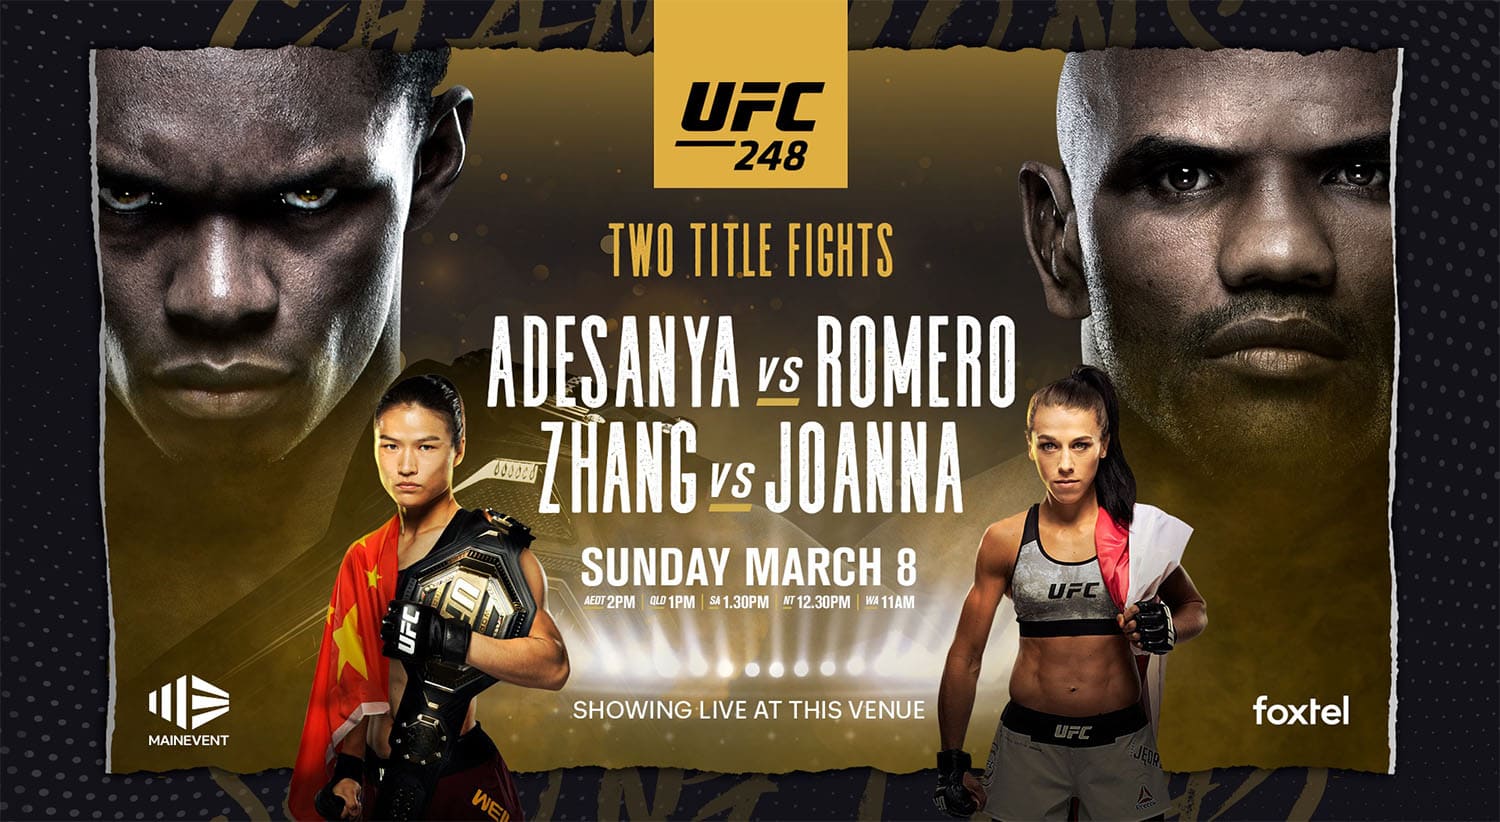 UFC 248: Адесанья - Ромеро дата проведения, кард, участники и результаты